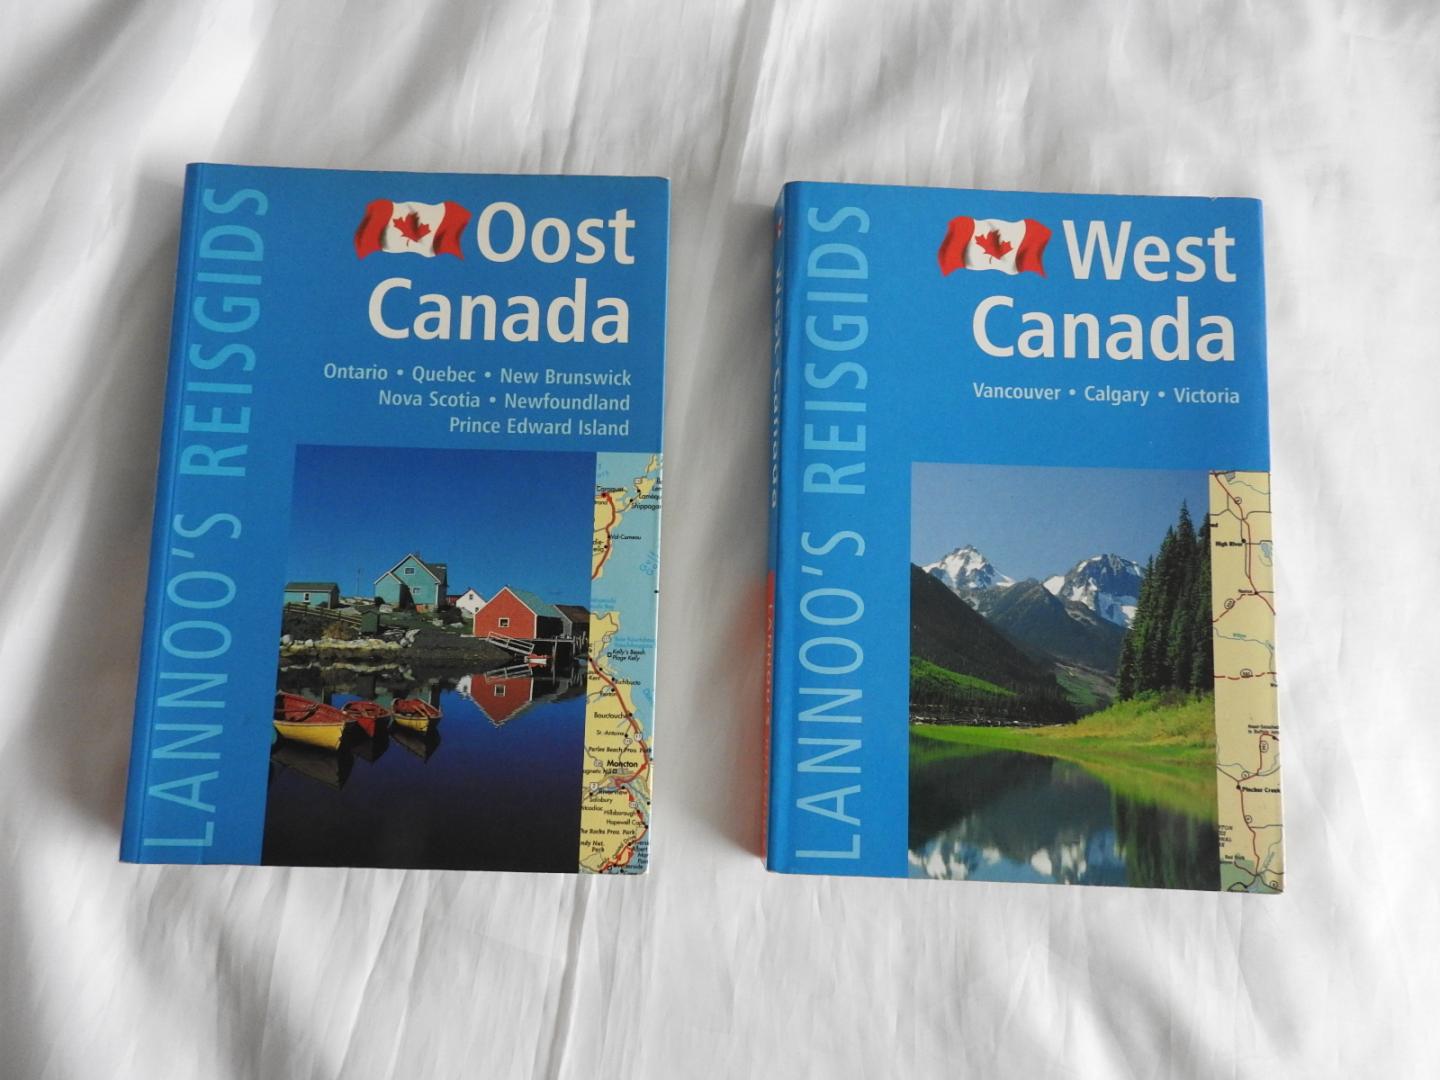 Wagner, Heike, Bernd Wagner - teuschl karl - wolfgang r. Weber - Lannoo's reisgids Oost Canada - West Canada